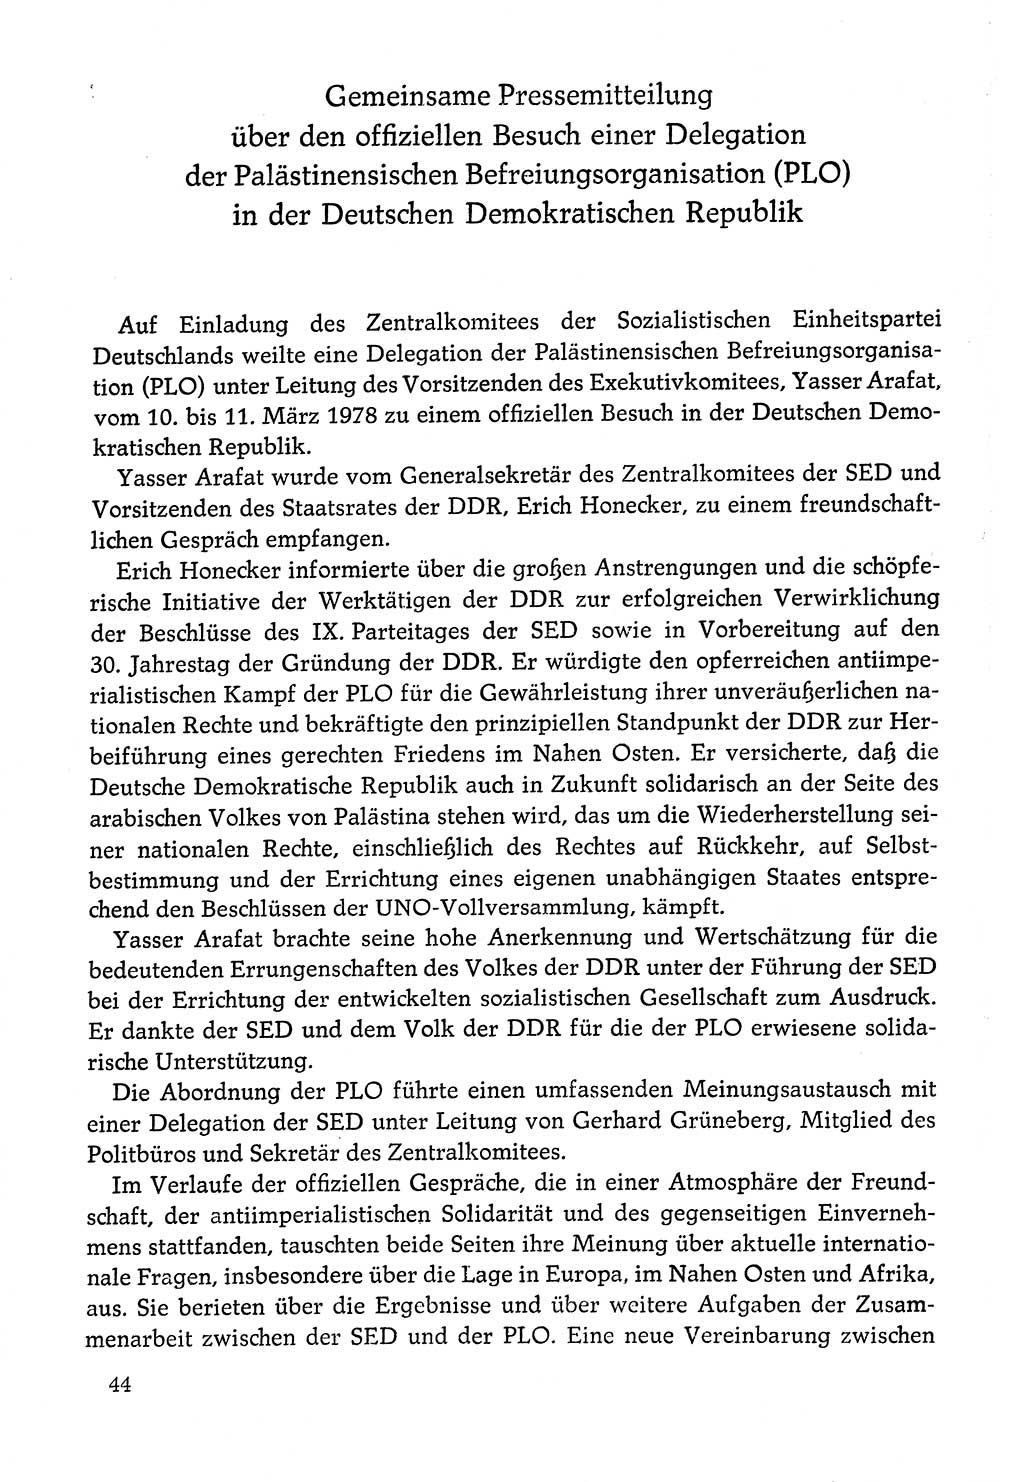 Dokumente der Sozialistischen Einheitspartei Deutschlands (SED) [Deutsche Demokratische Republik (DDR)] 1978-1979, Seite 44 (Dok. SED DDR 1978-1979, S. 44)